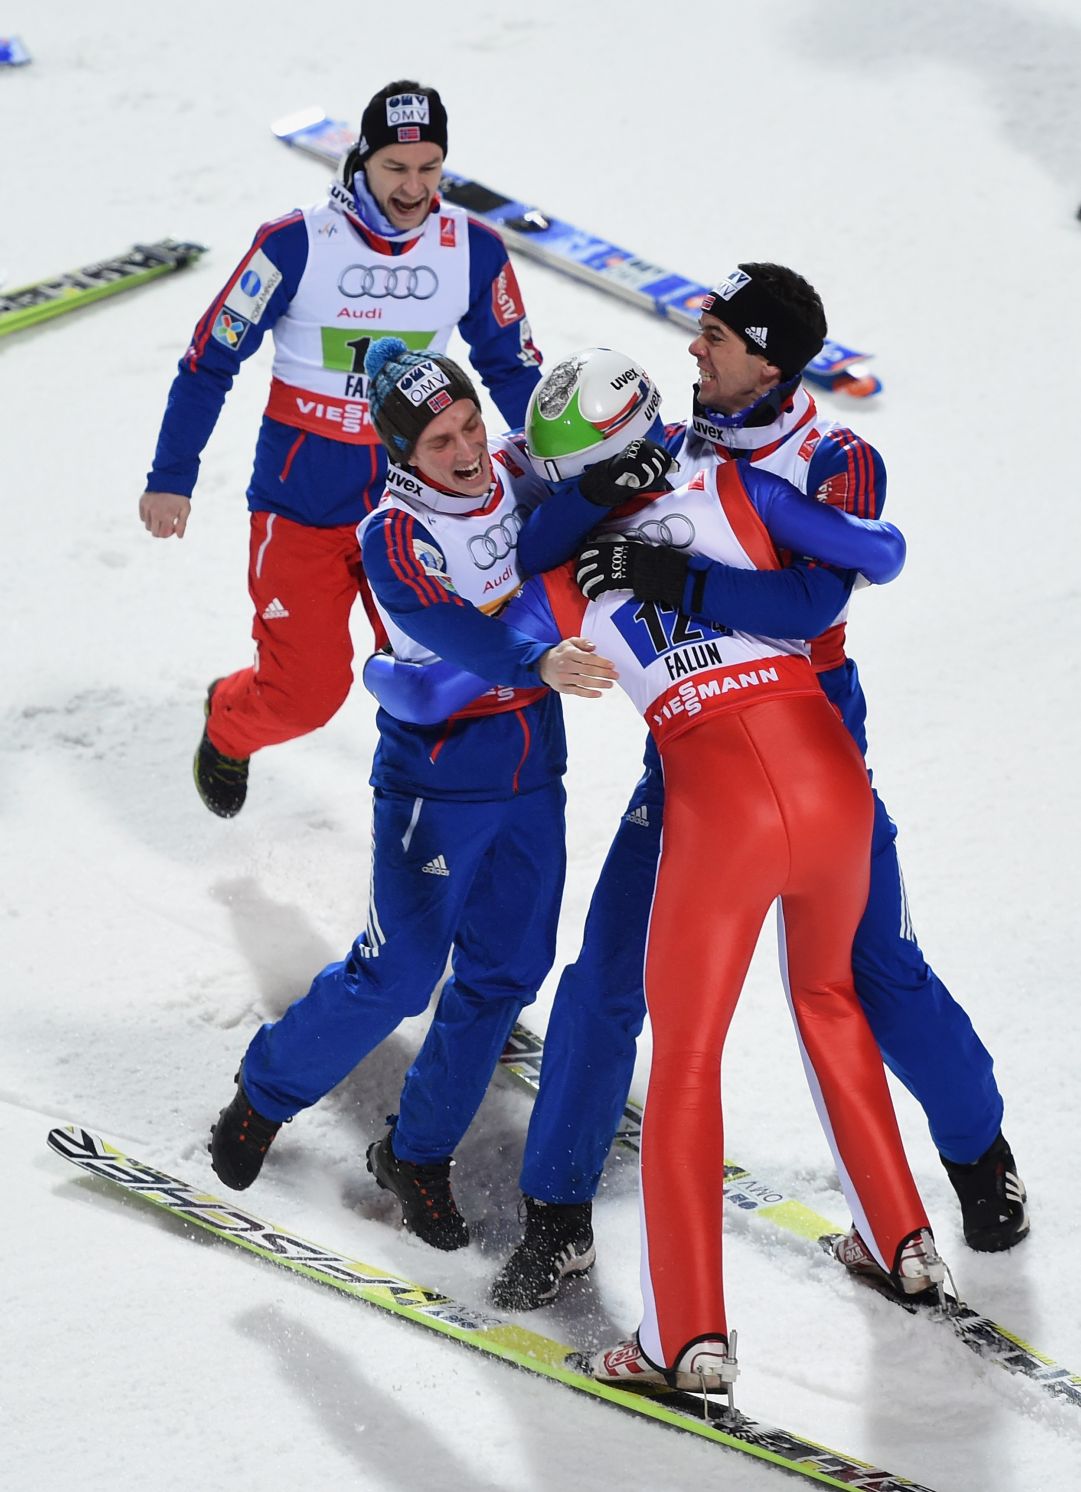 Da Falun 1993 a Falun 2015, la Norvegia torna a vincere l'oro dopo 22 anni